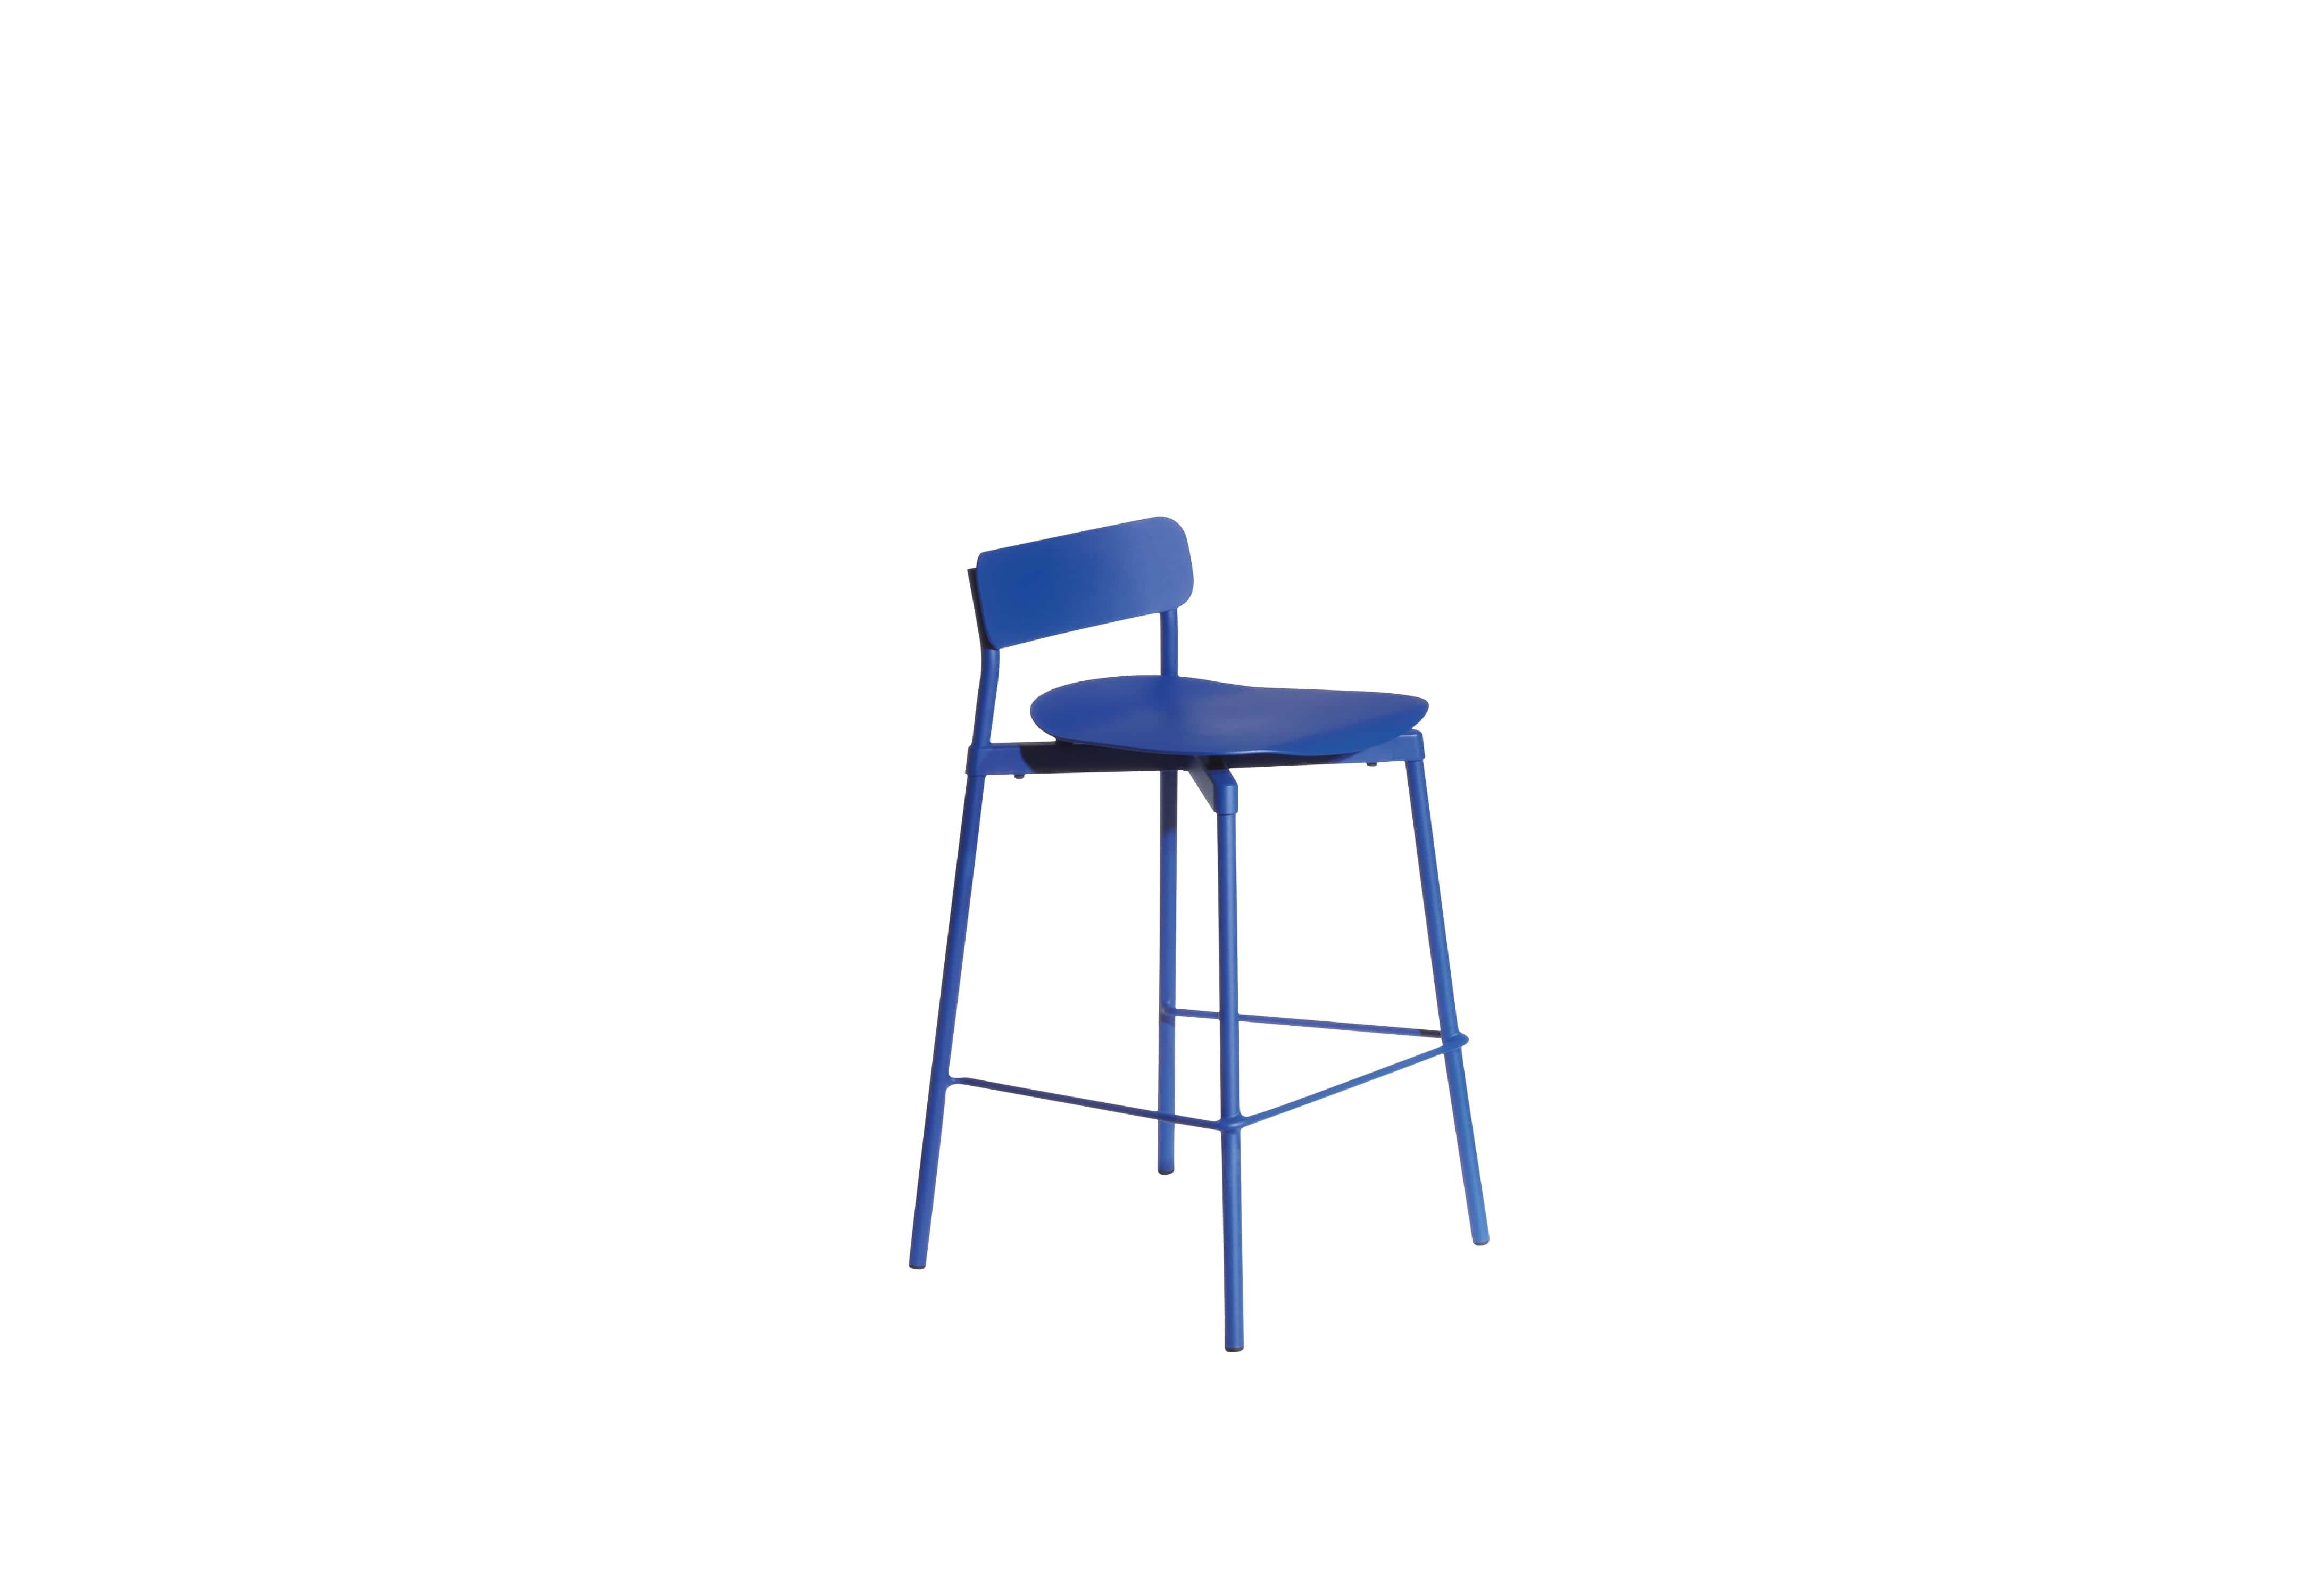 Petite Friture Small Fromme Tabouret de bar en aluminium bleu par Tom Chung, 2020

La collection S/One se distingue par sa ligne épurée et son design compact. Les absorbeurs placés sous les sièges leur confèrent une flexibilité souple et très